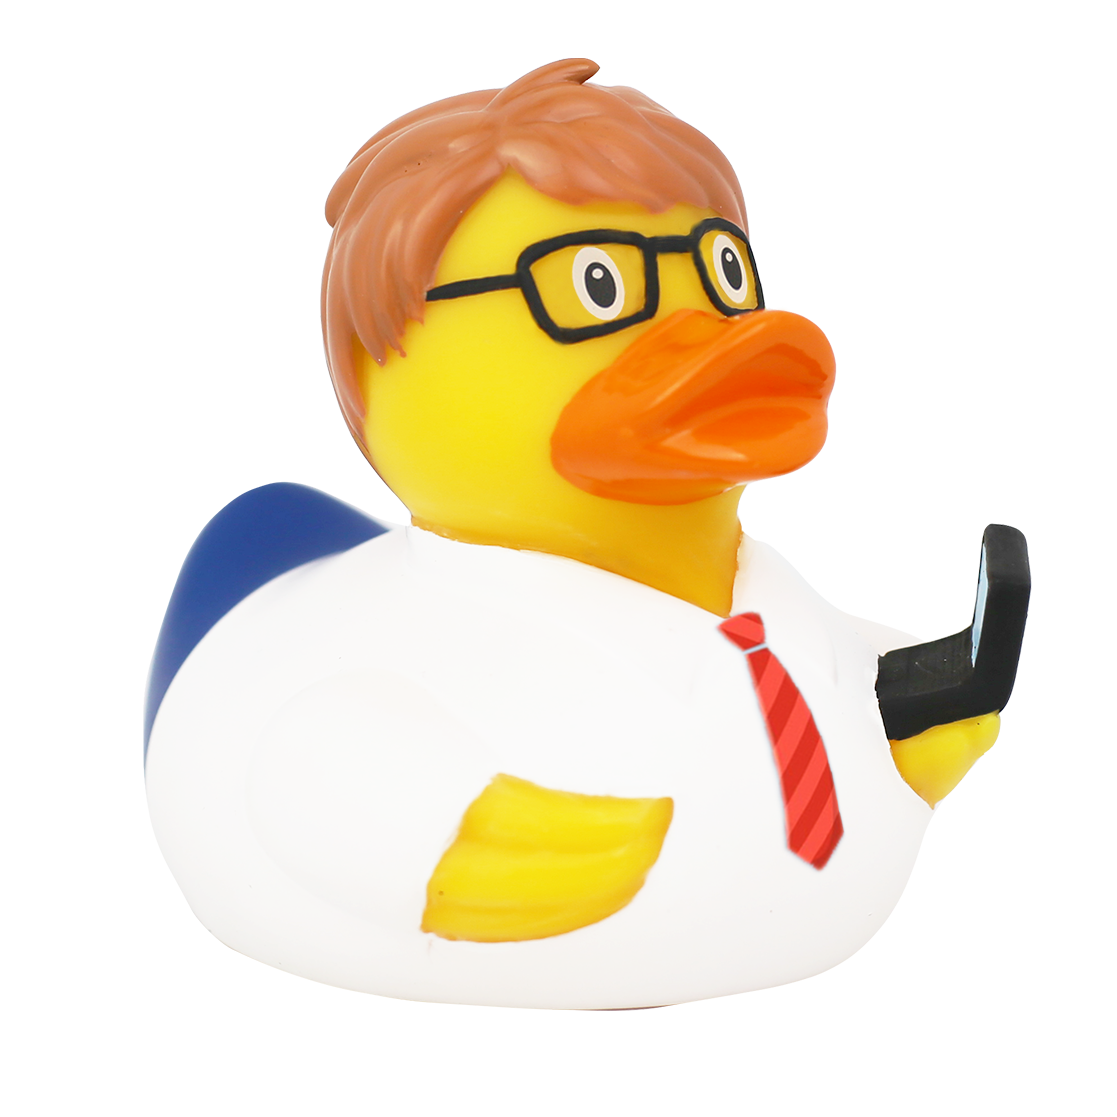 Computer Engineer Duck